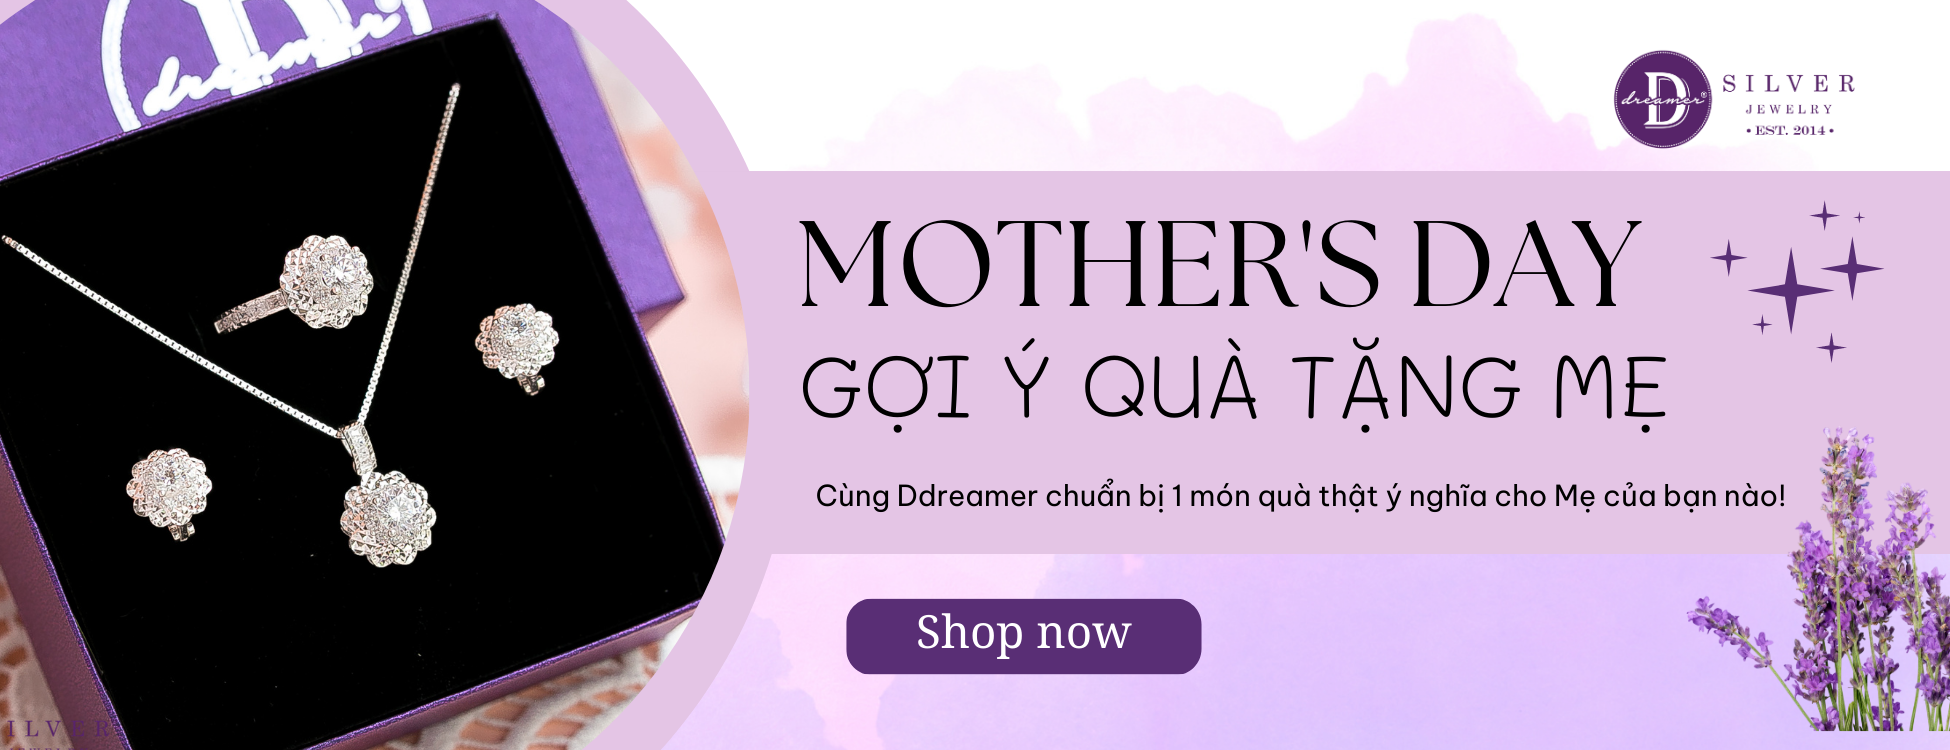 Trang Sức Dành Tặng Mẹ - Jewelry For Mom